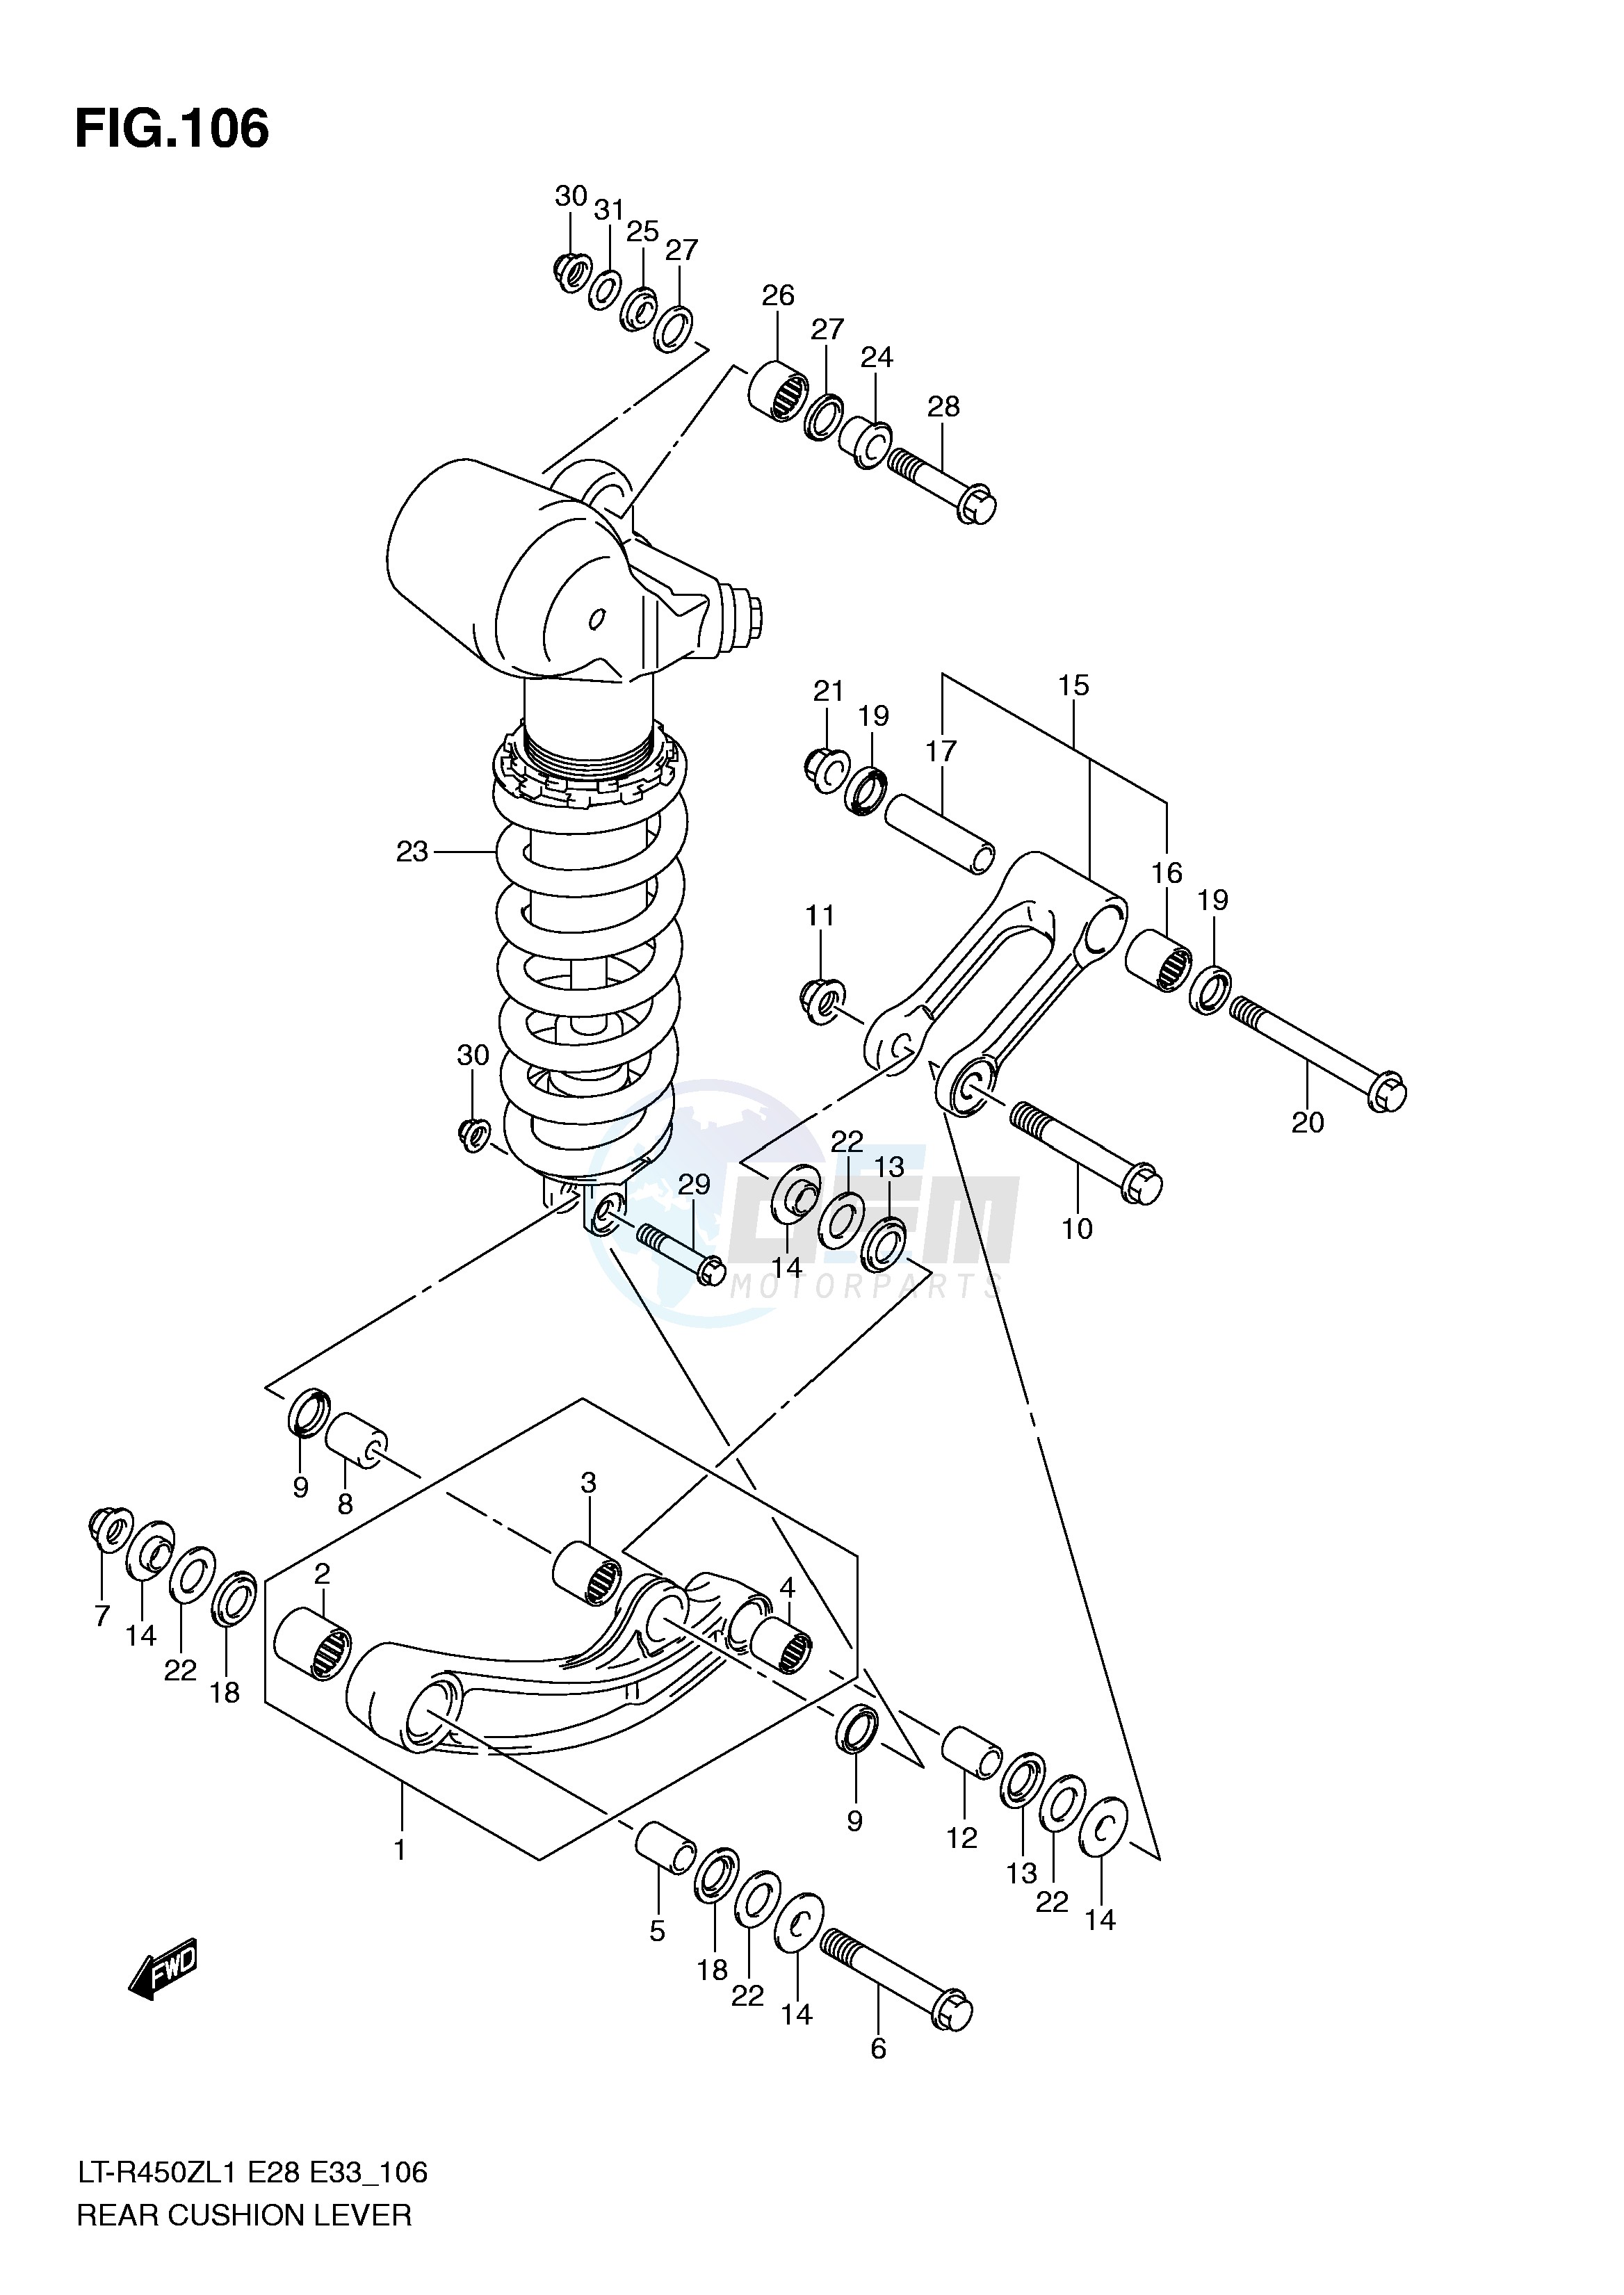 REAR CUSHION LEVER (LT-R450L1 E33) blueprint